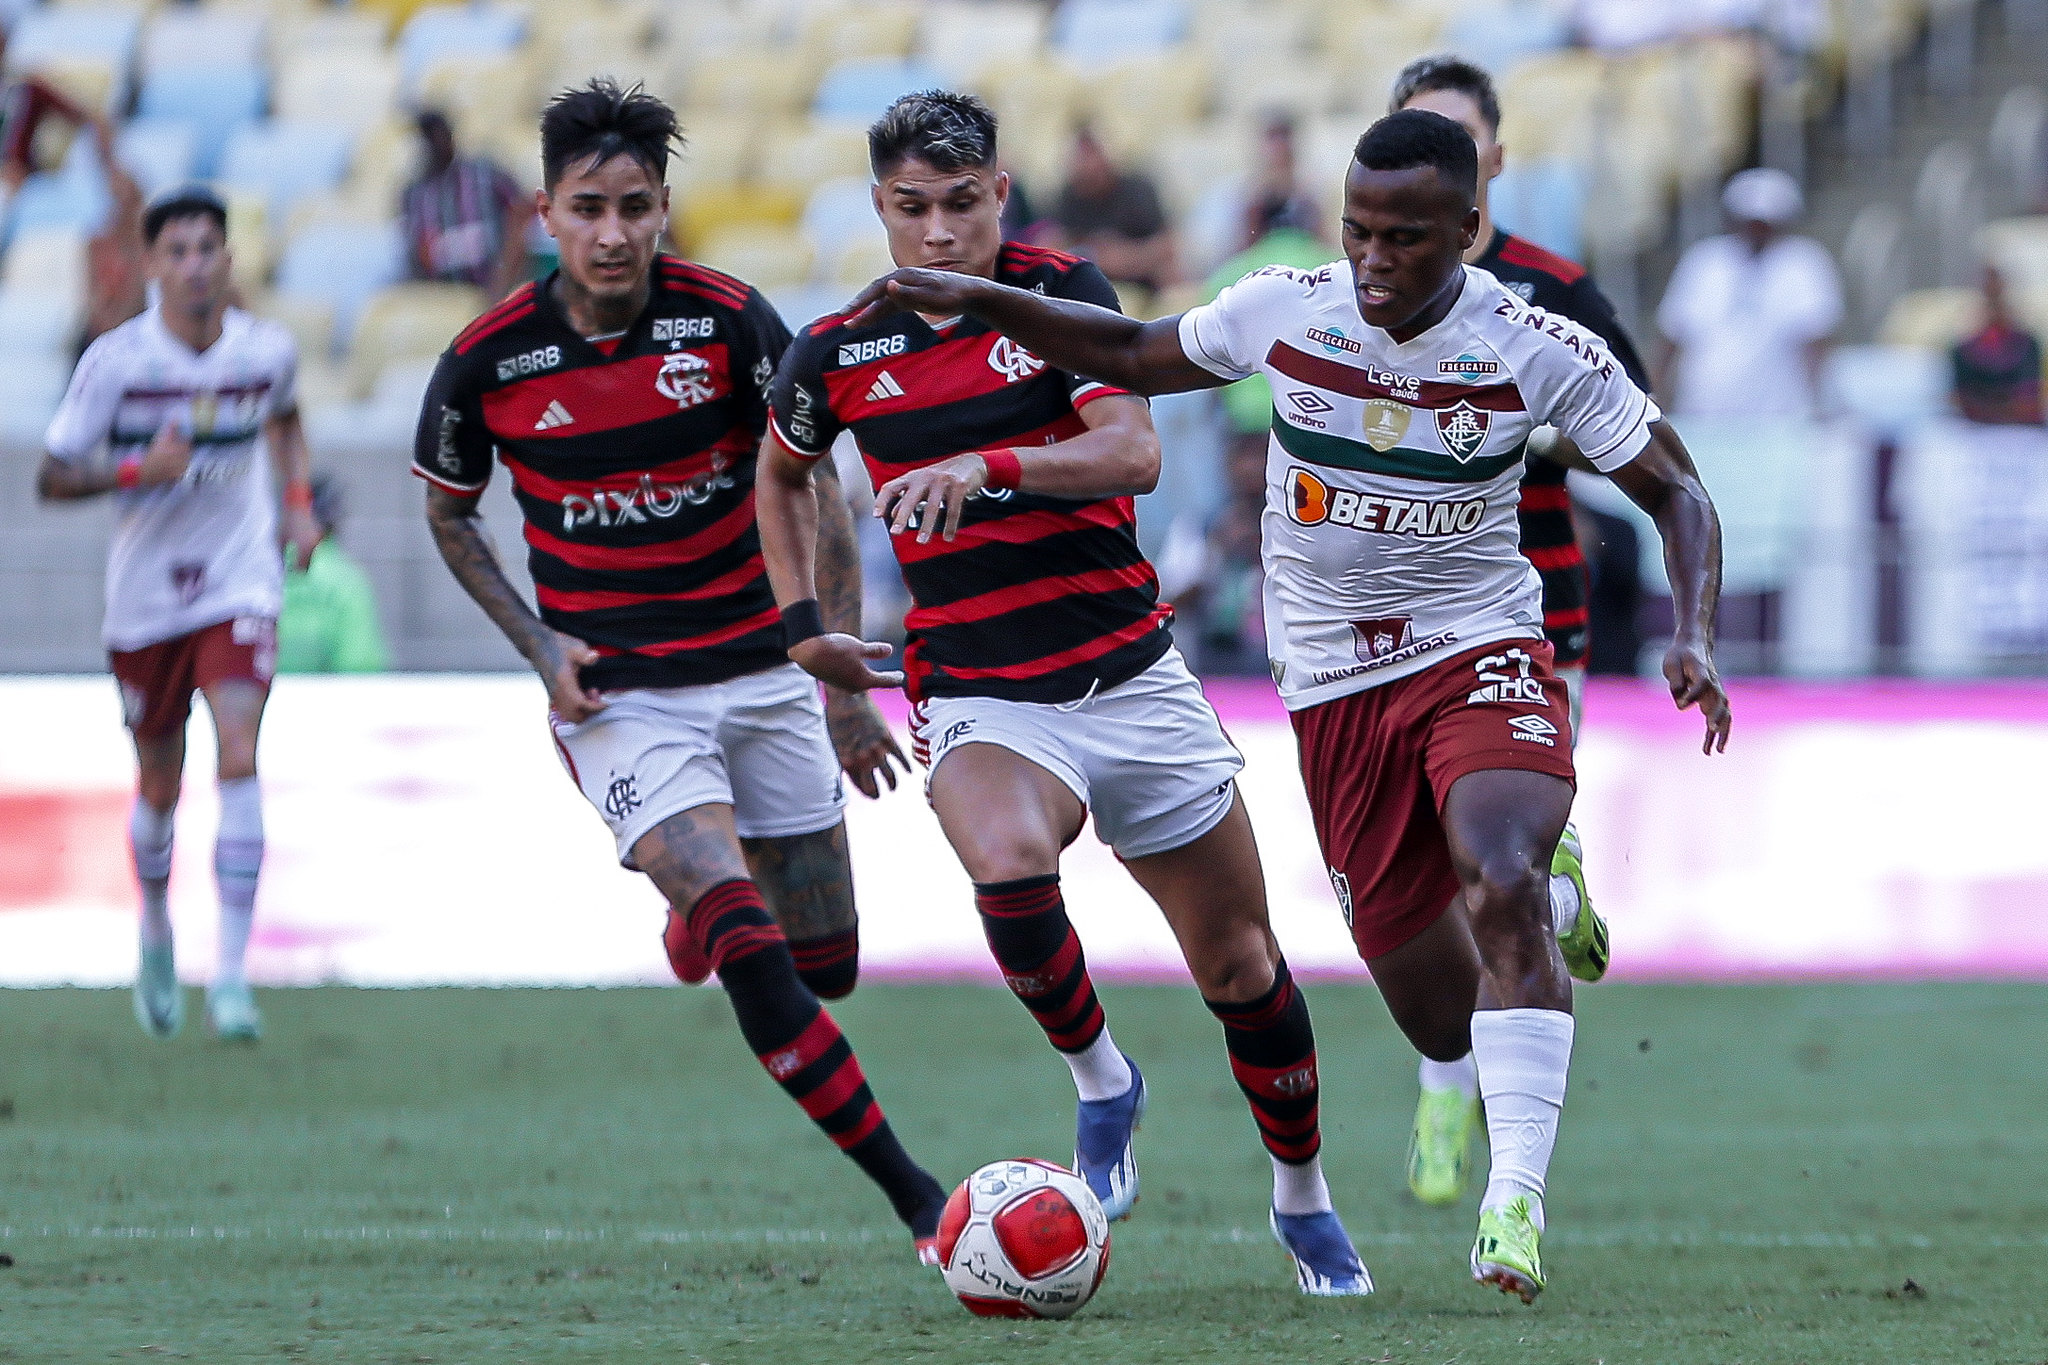 Rio de Janeiro, RJ - 25/02/2024 - Maracanã - Fluminense enfrenta o Flamengo esta tarde no Maracanã pela 10ª rodada do Campeonato Carioca 2024. FOTO DE LUCAS MERÇON/FLUMINENSE FC